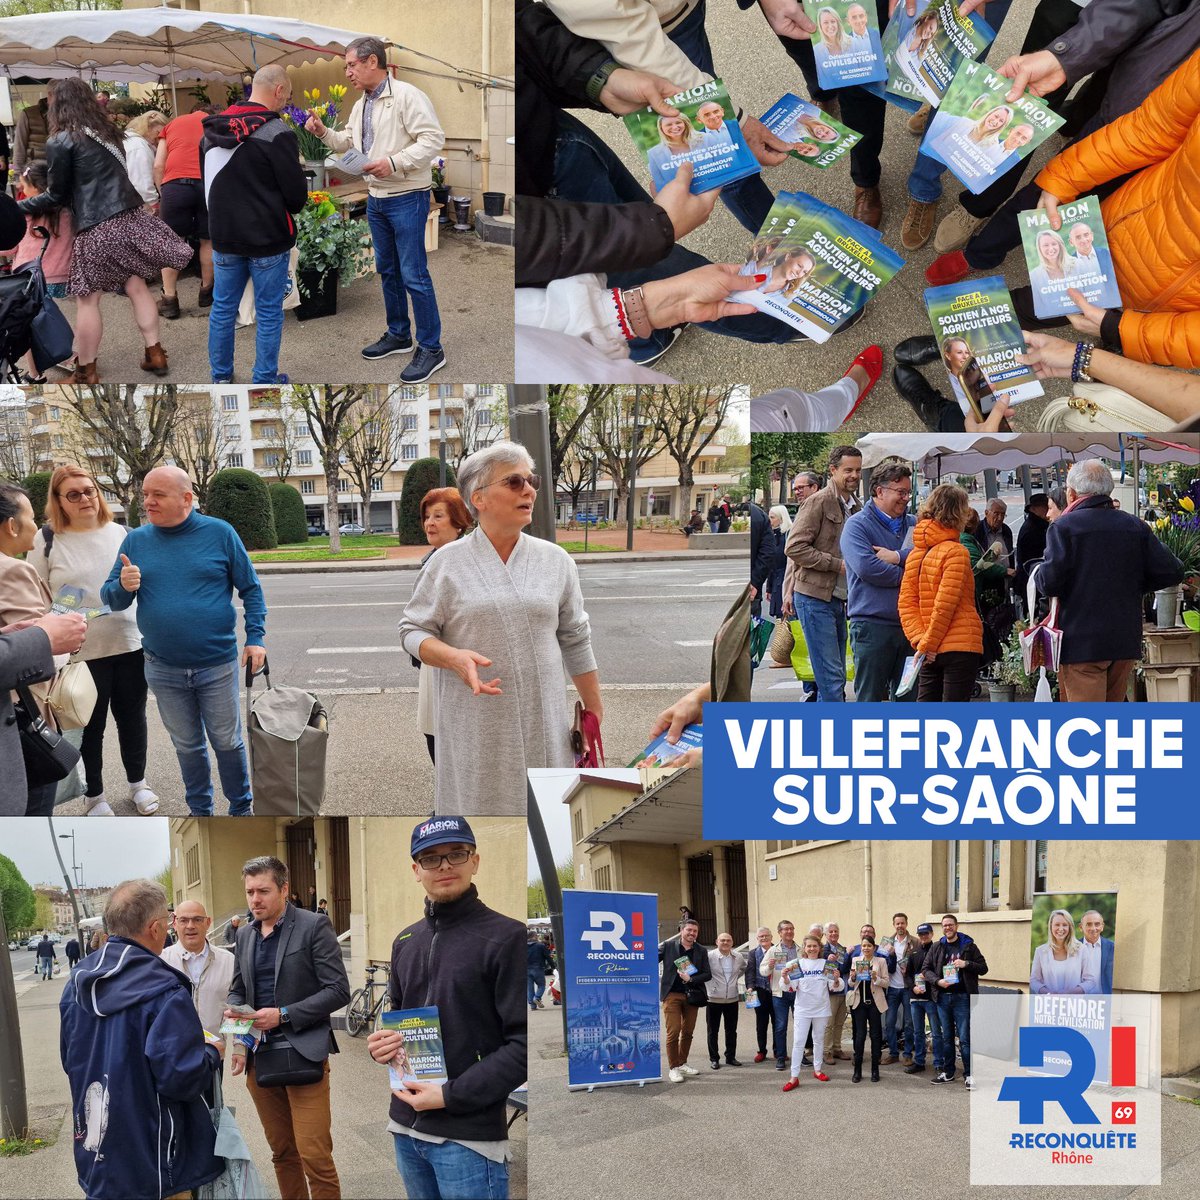 #Rhône #Circo6909
#VillefranchesurSaône #VotezMarion Le Marché couvert de la capitale Caladoise a été sous la bannière de 'Reconquête!' ce matin dimanche 7 avril. Nous avons eu un très bon accueil! Merci encore à l'équipe! Vive le Beaujolais !!!!